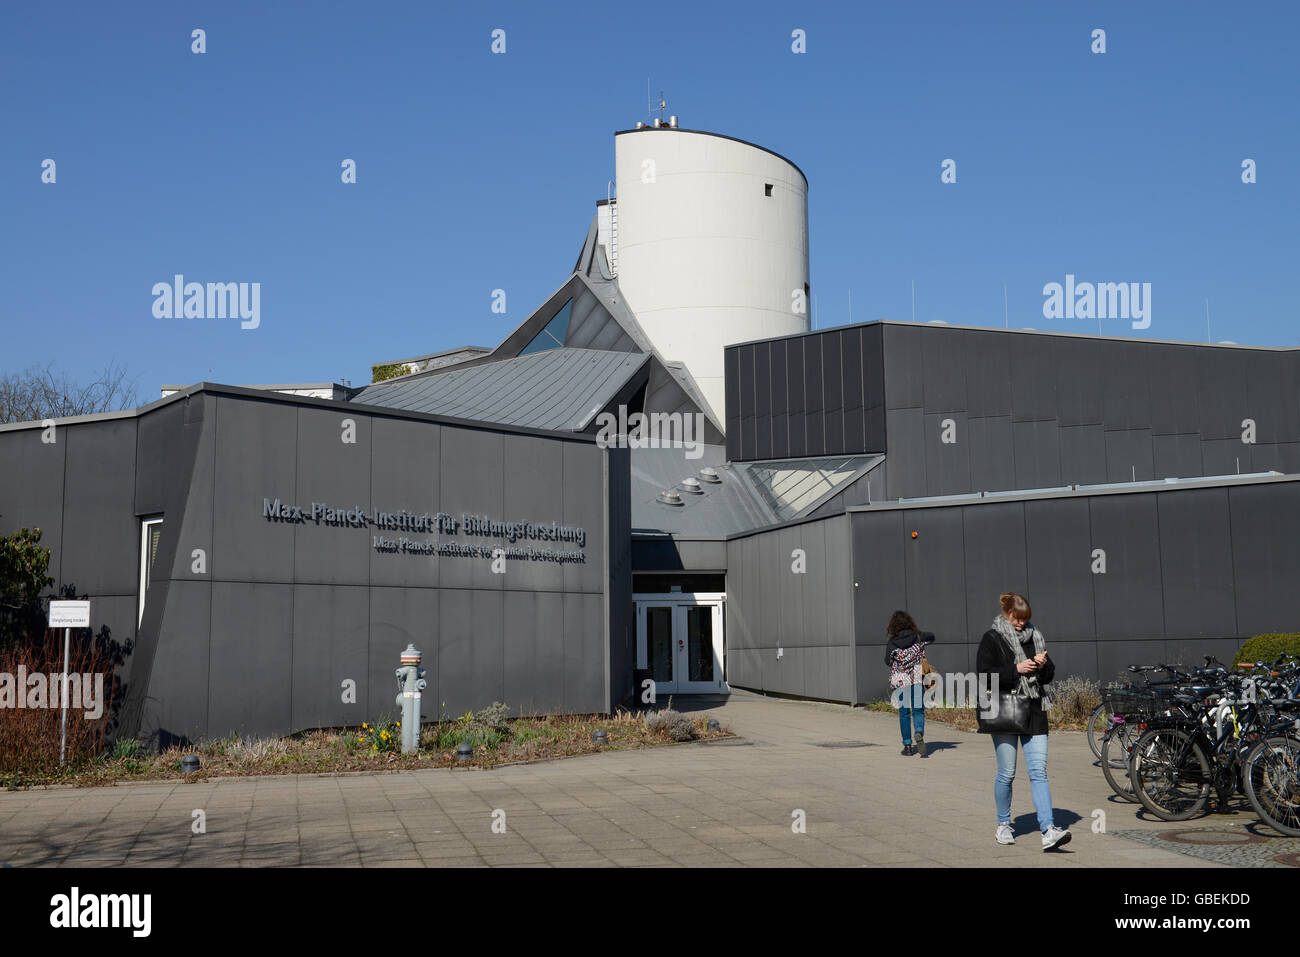 La Max-Planck-Institut fuer Bildungsforschung, Lentzeallee, Wilmersdorf, Berlin, Deutschland Foto de stock